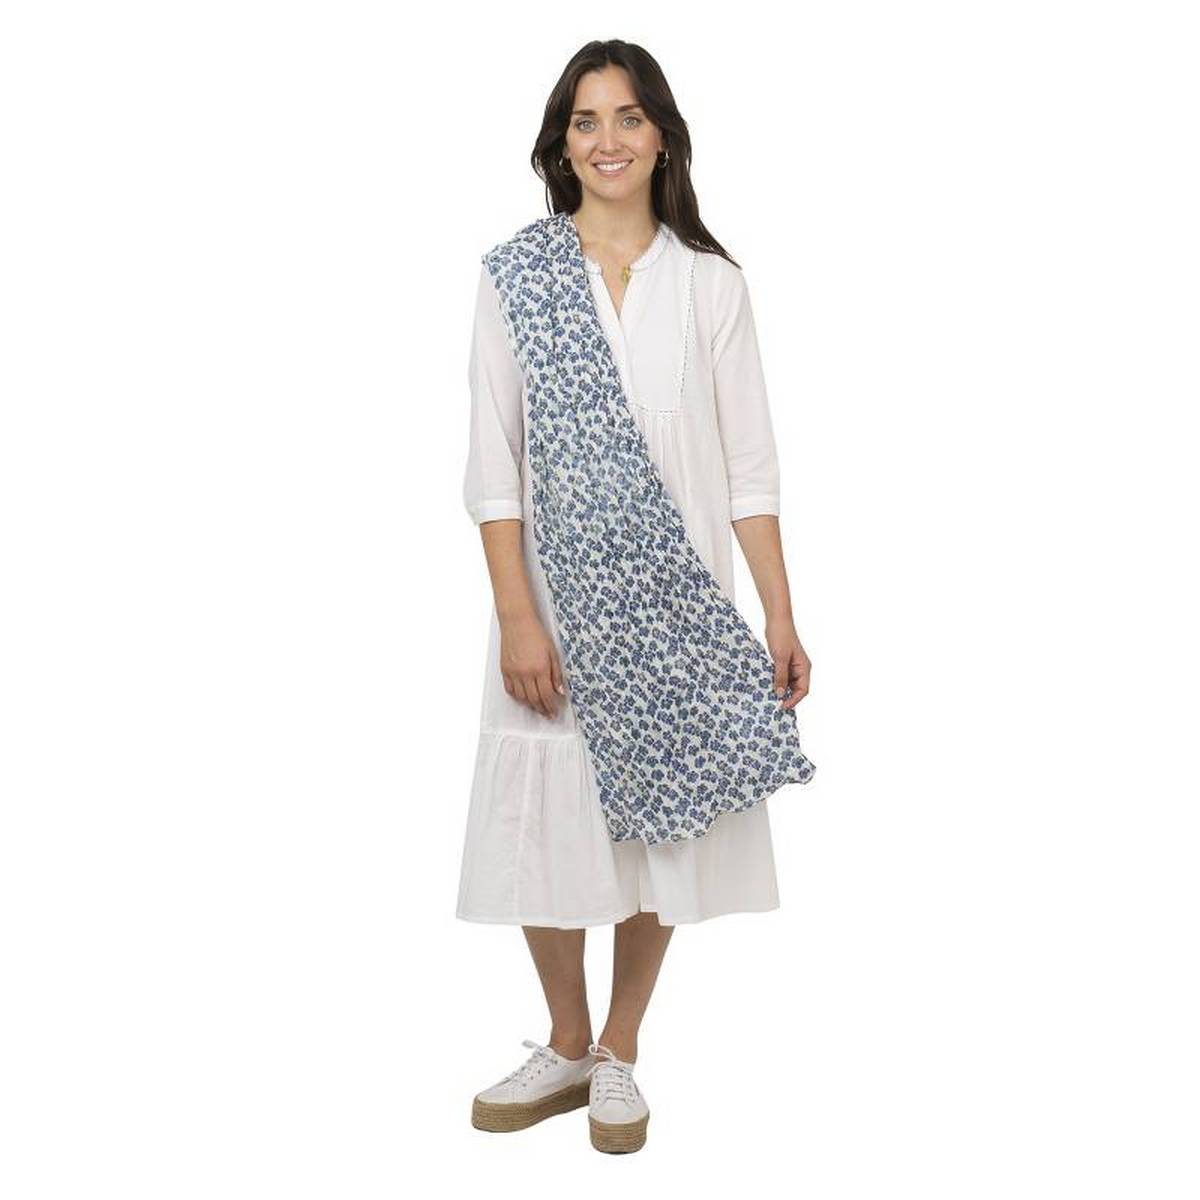 foulard zen ethic grande-etole-pansy-voile-de-coton-110x180cm une idee cadeau chez ugo et lea   (3)